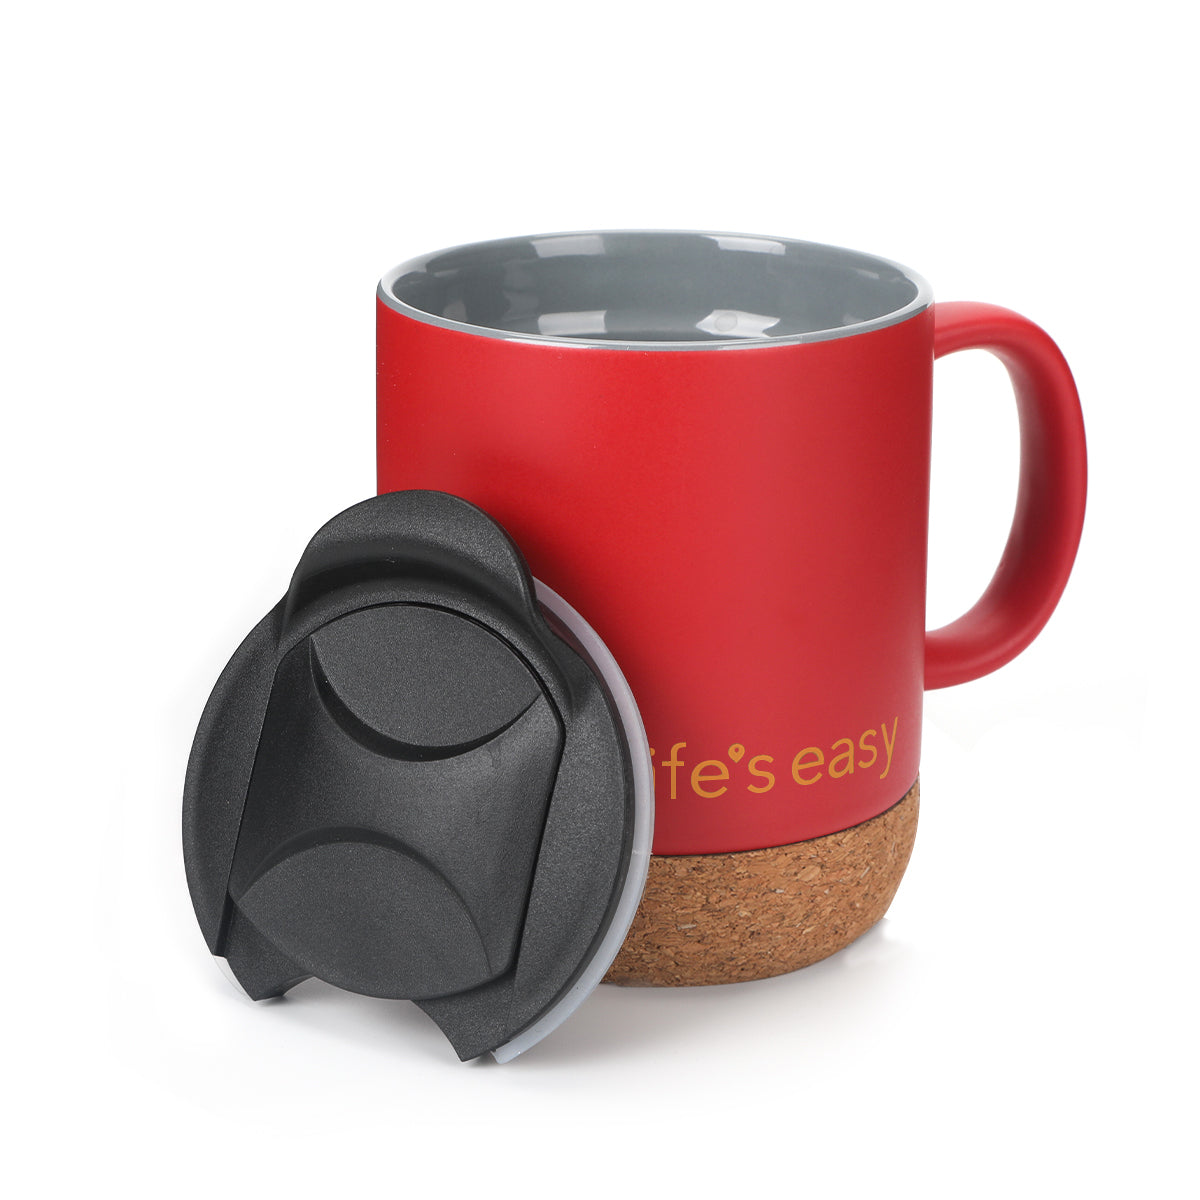 Life's Easy ceramic mug